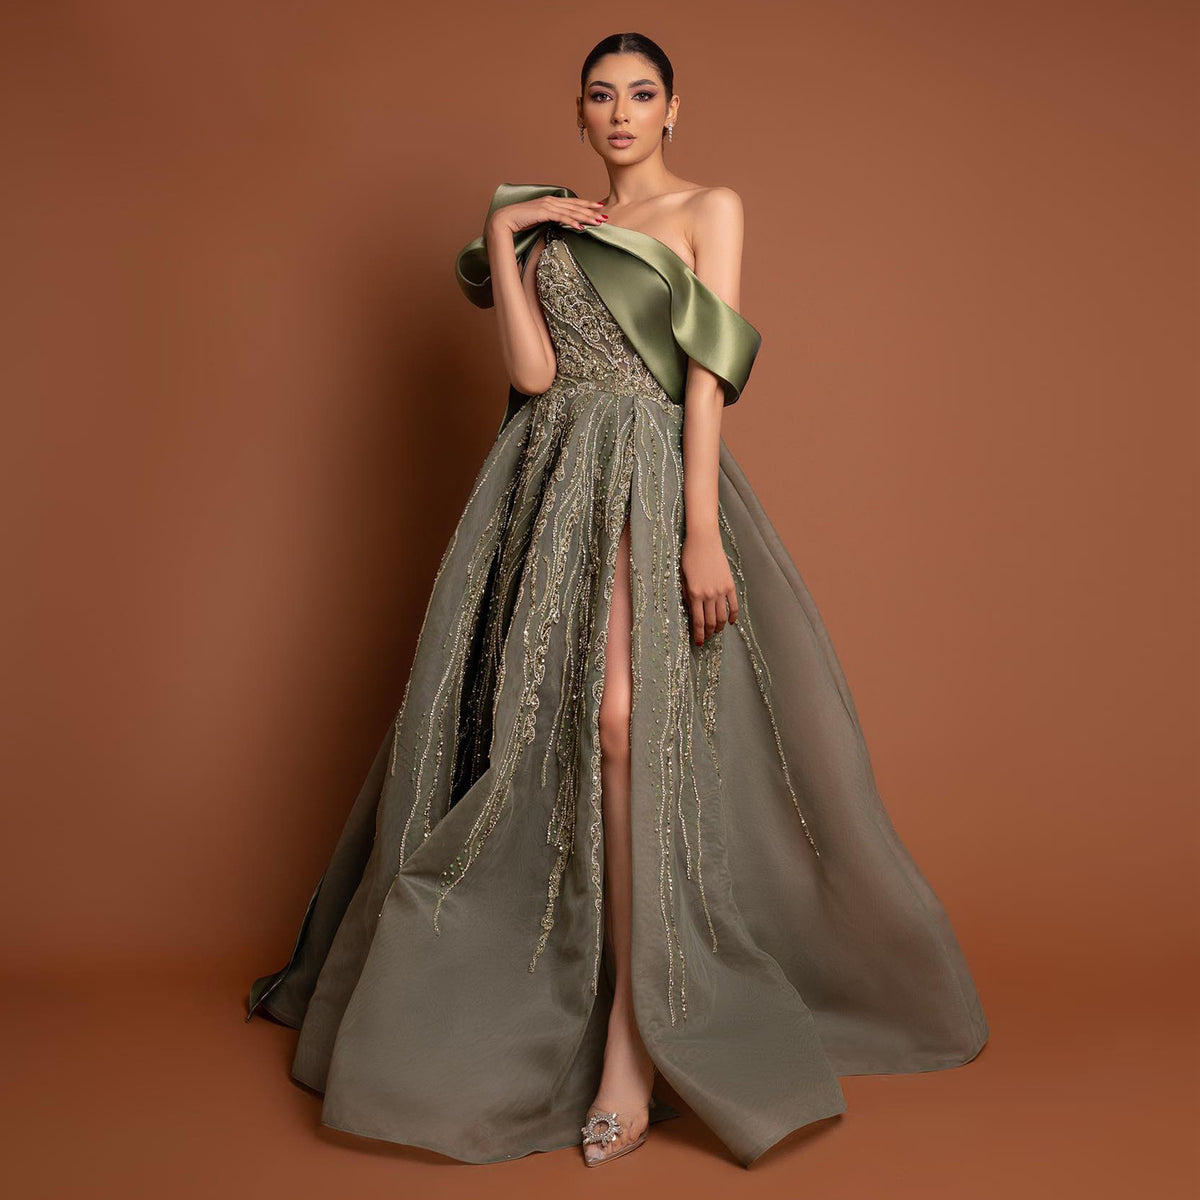 Sharon Said Arabisch Schwarz und Smaragdgrün A-Linie Abendkleid mit Ärmeln Elegante trägerlose Frauen Hochzeitsfeierkleider SF031